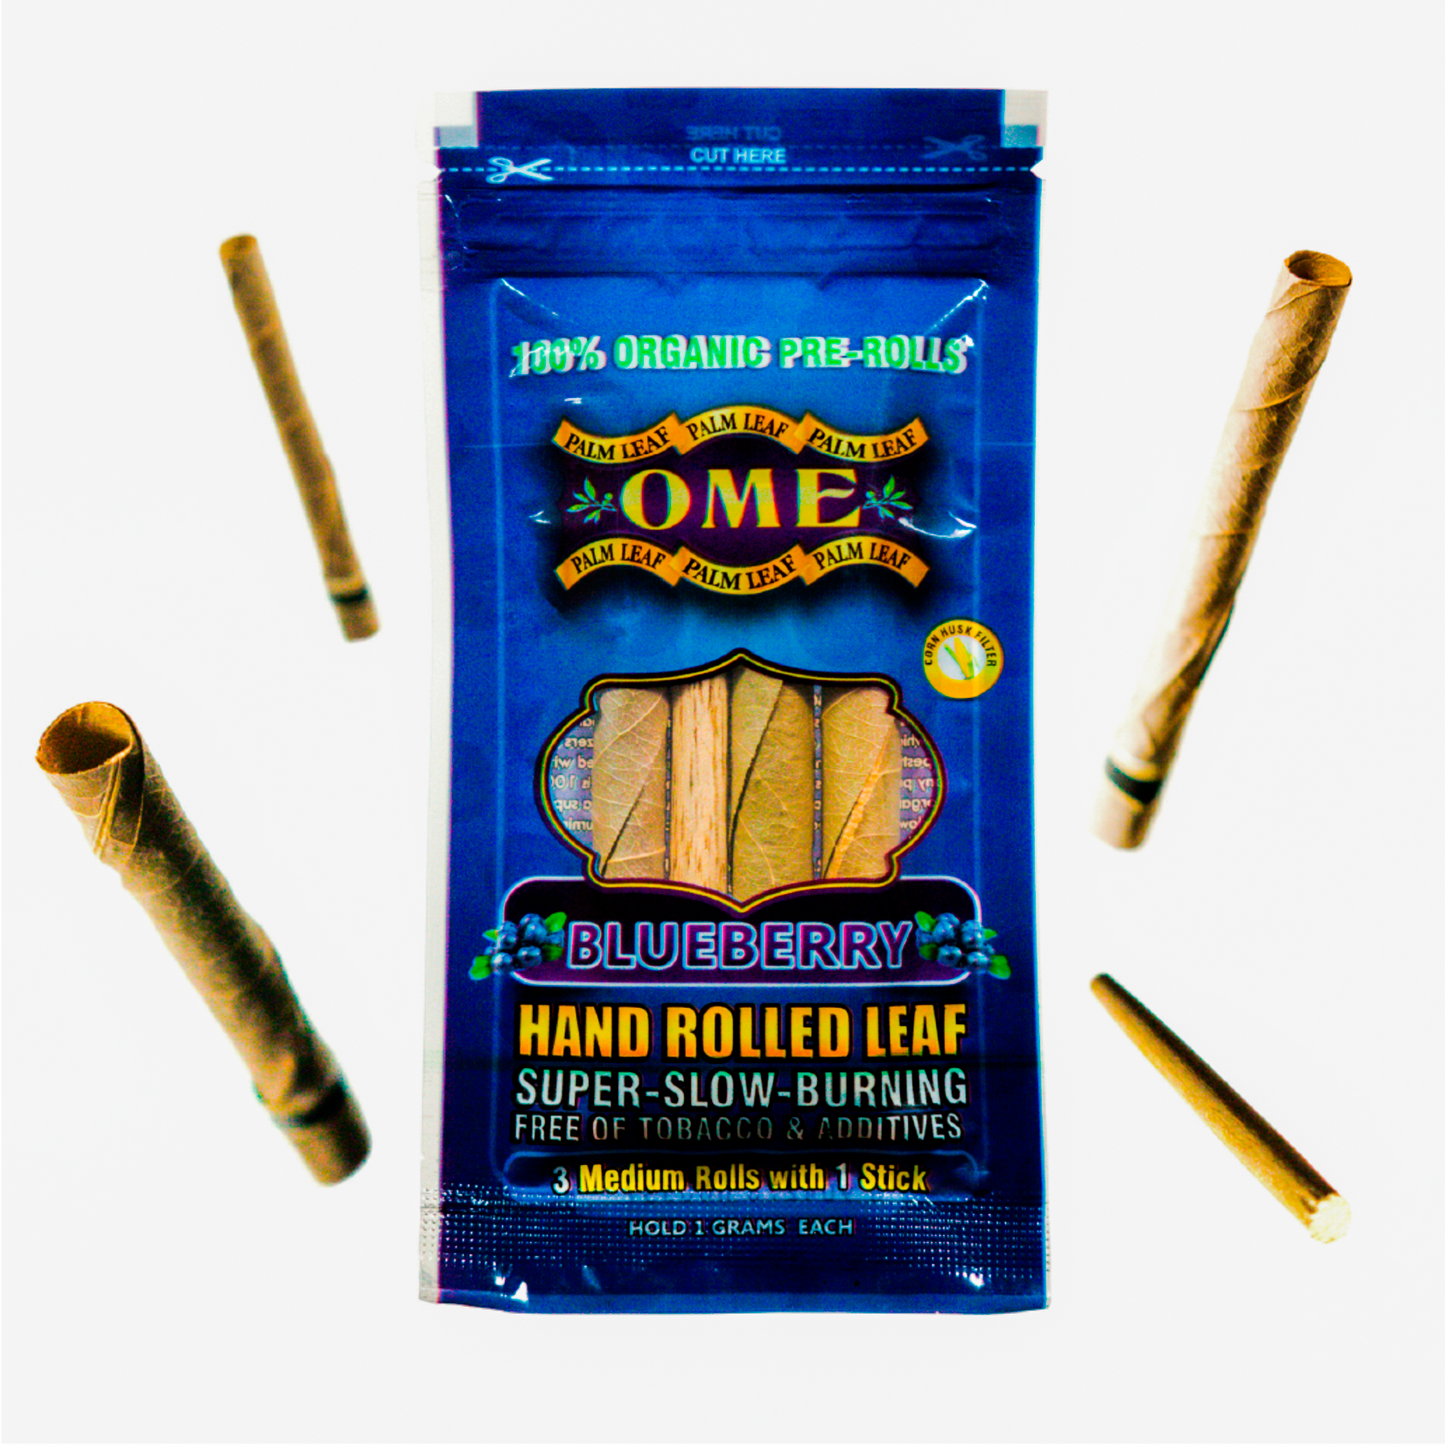 OME-Palm Leaf- pre rolls